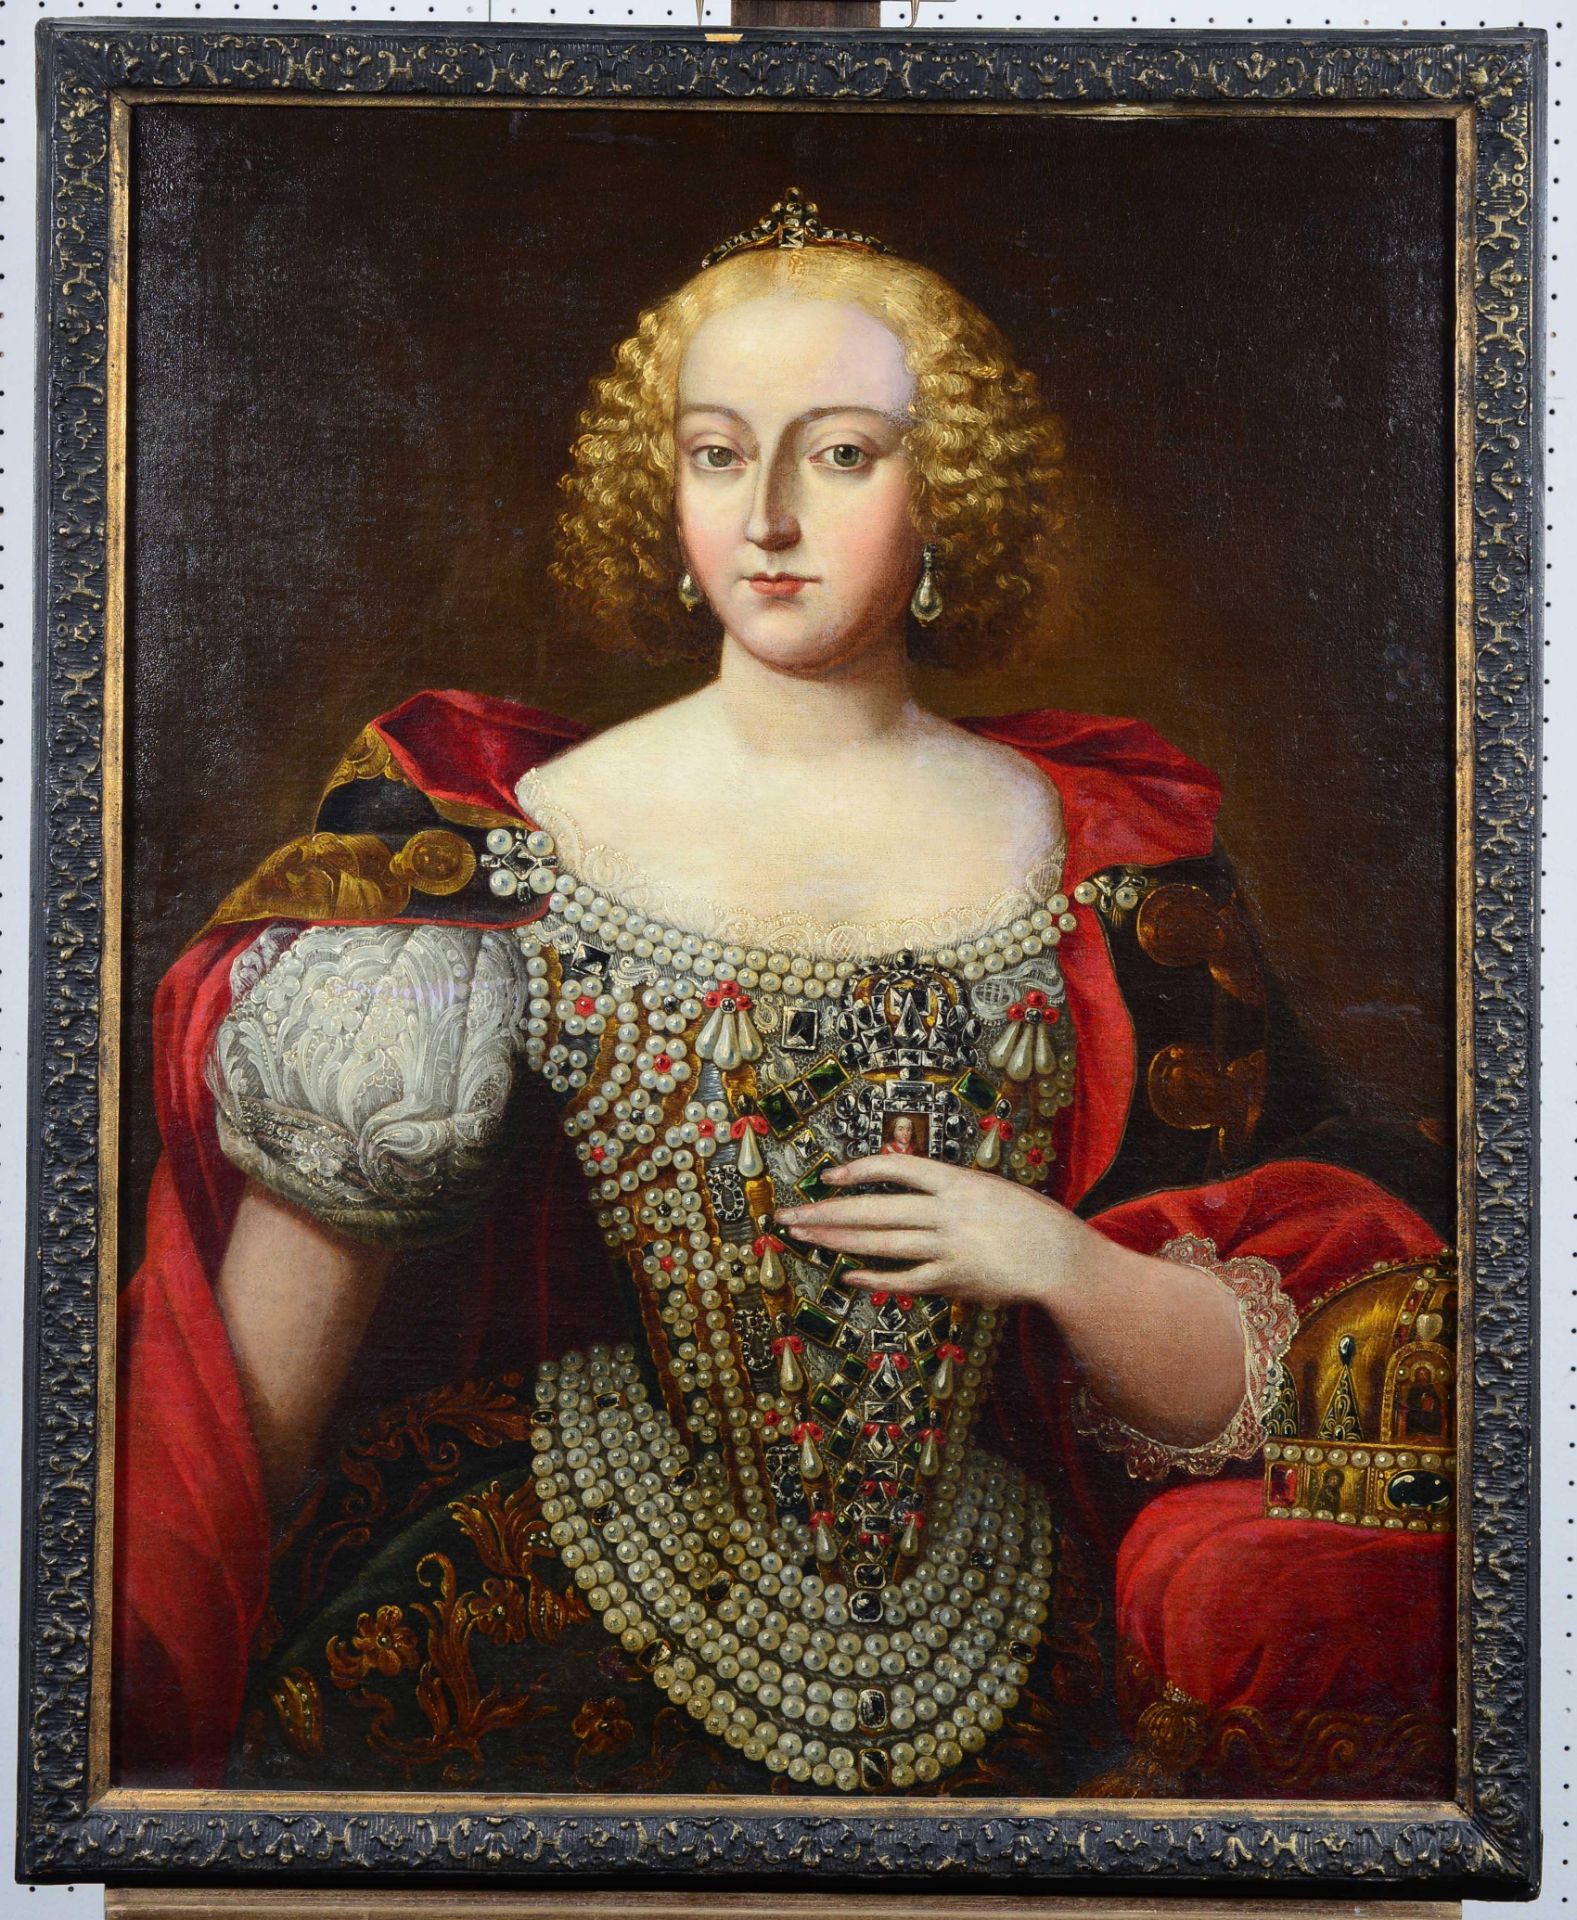 ÖSTERREICH/UNGARN, 18. JH.: Porträt von Maria Theresia im Krönungsornat. - Image 2 of 6